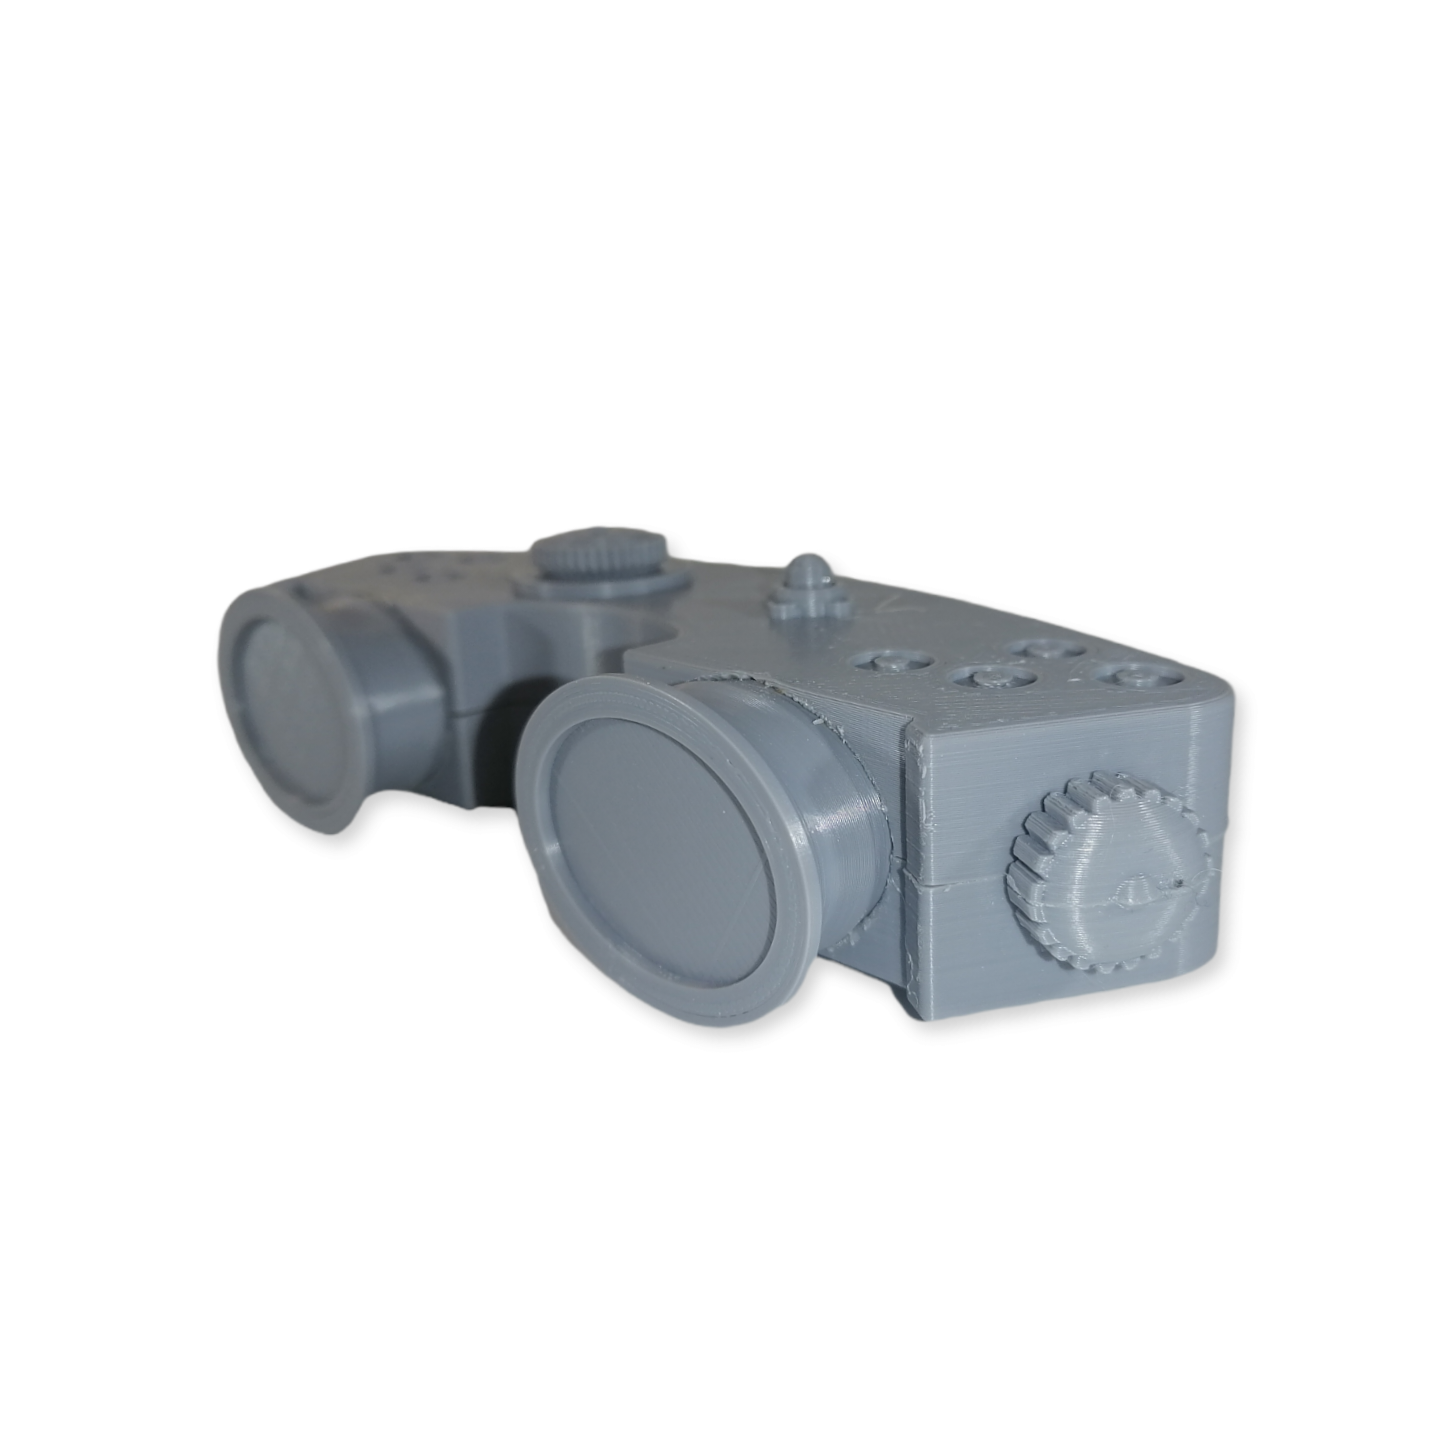 Kenobi Binoculars - Sci-Fi Prop - 3D Printed Replica